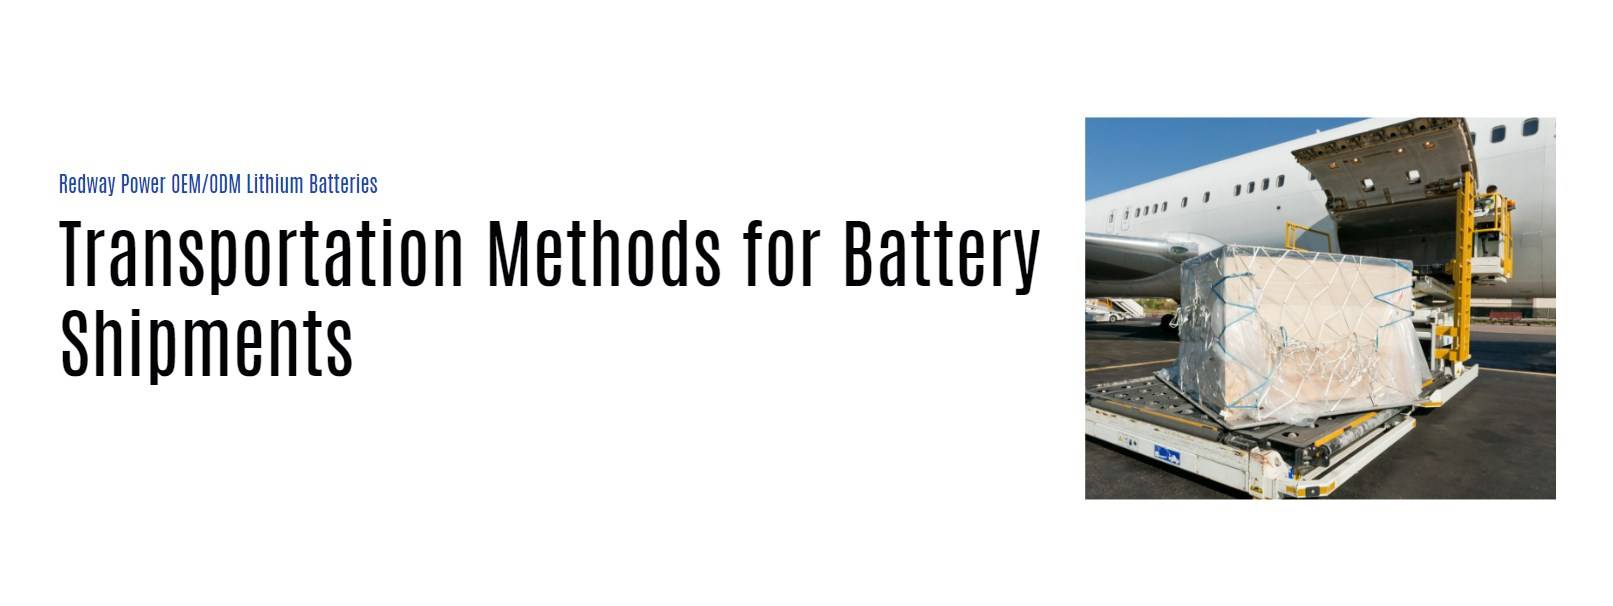 Transportation Methods for Battery Shipments